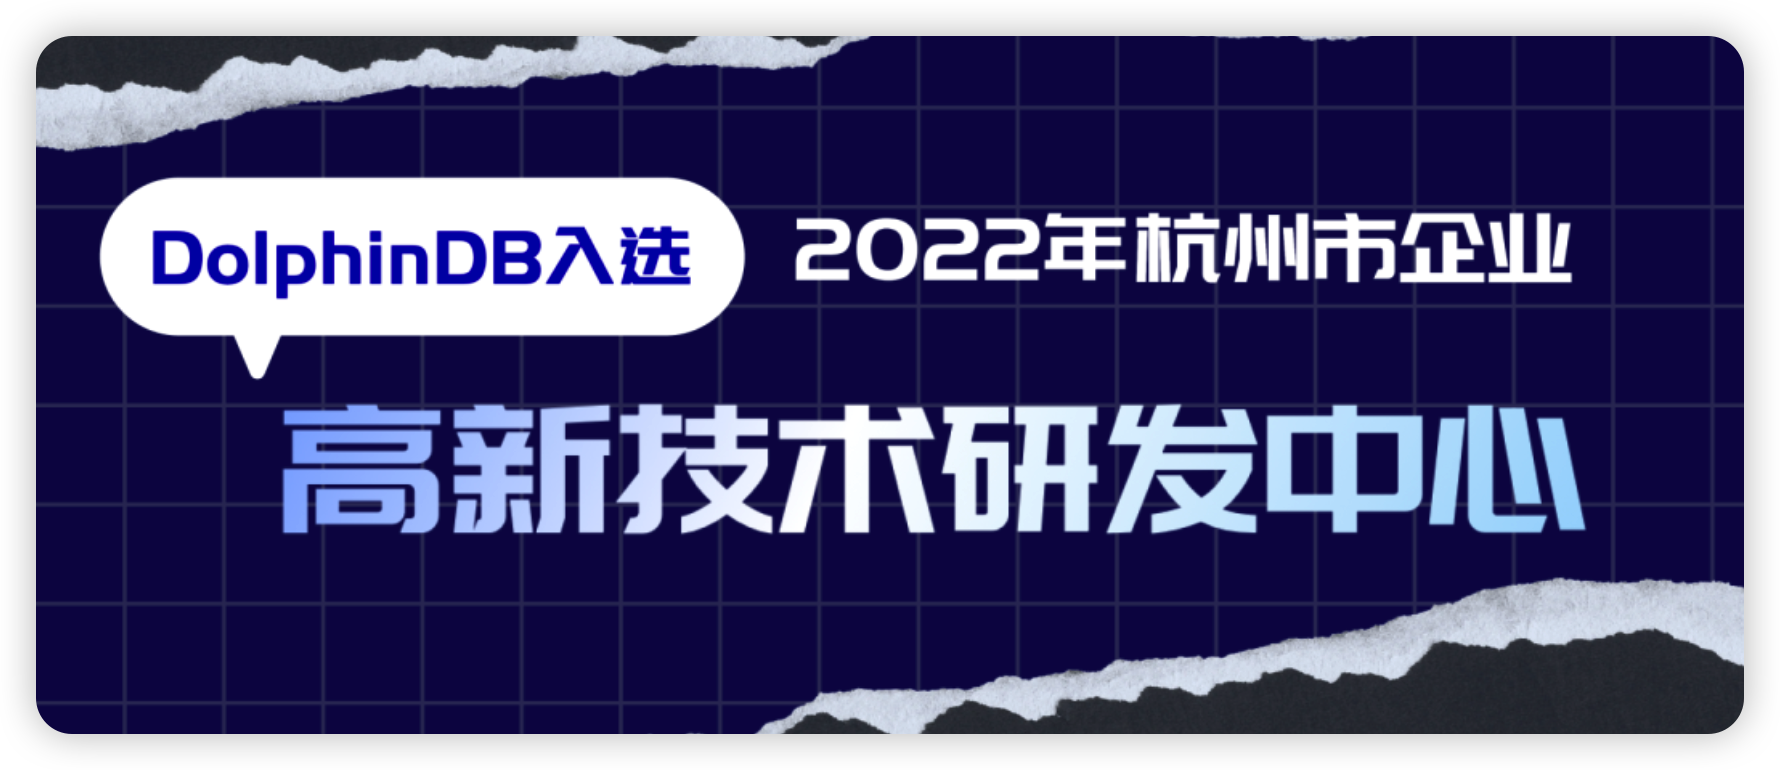 再受认可 | DolphinDB 入选2022年杭州市企业高新技术研发中心名单